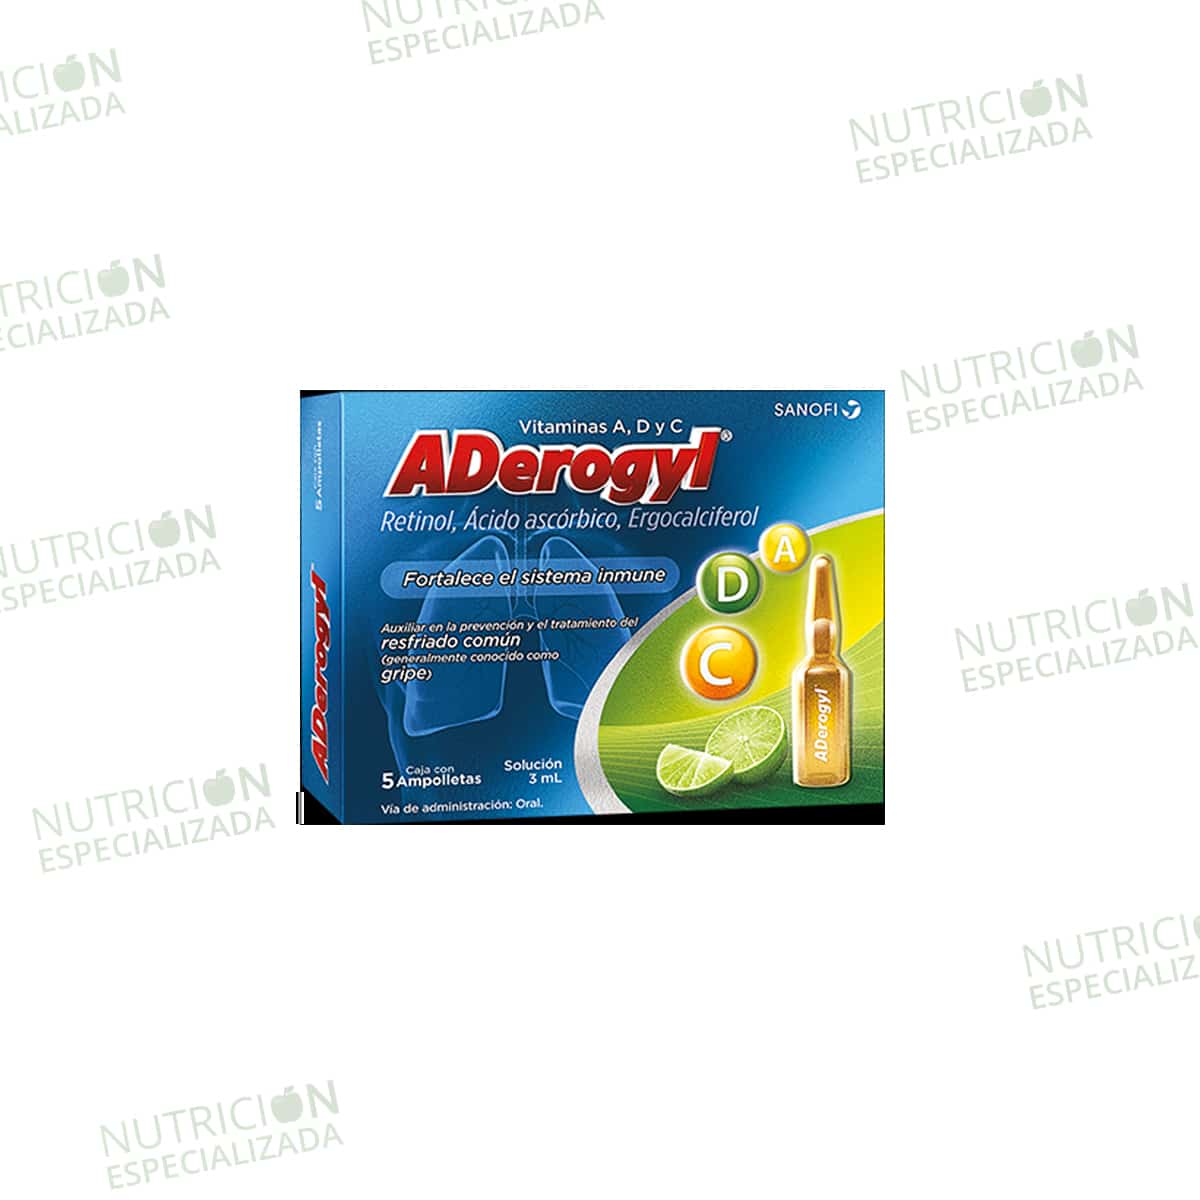 Protege a los peques del hogar con ADerogyl infantil y el poder de la  vitamina A,C y D. 💙 #ADerogylParaTodos, By ADerogyl